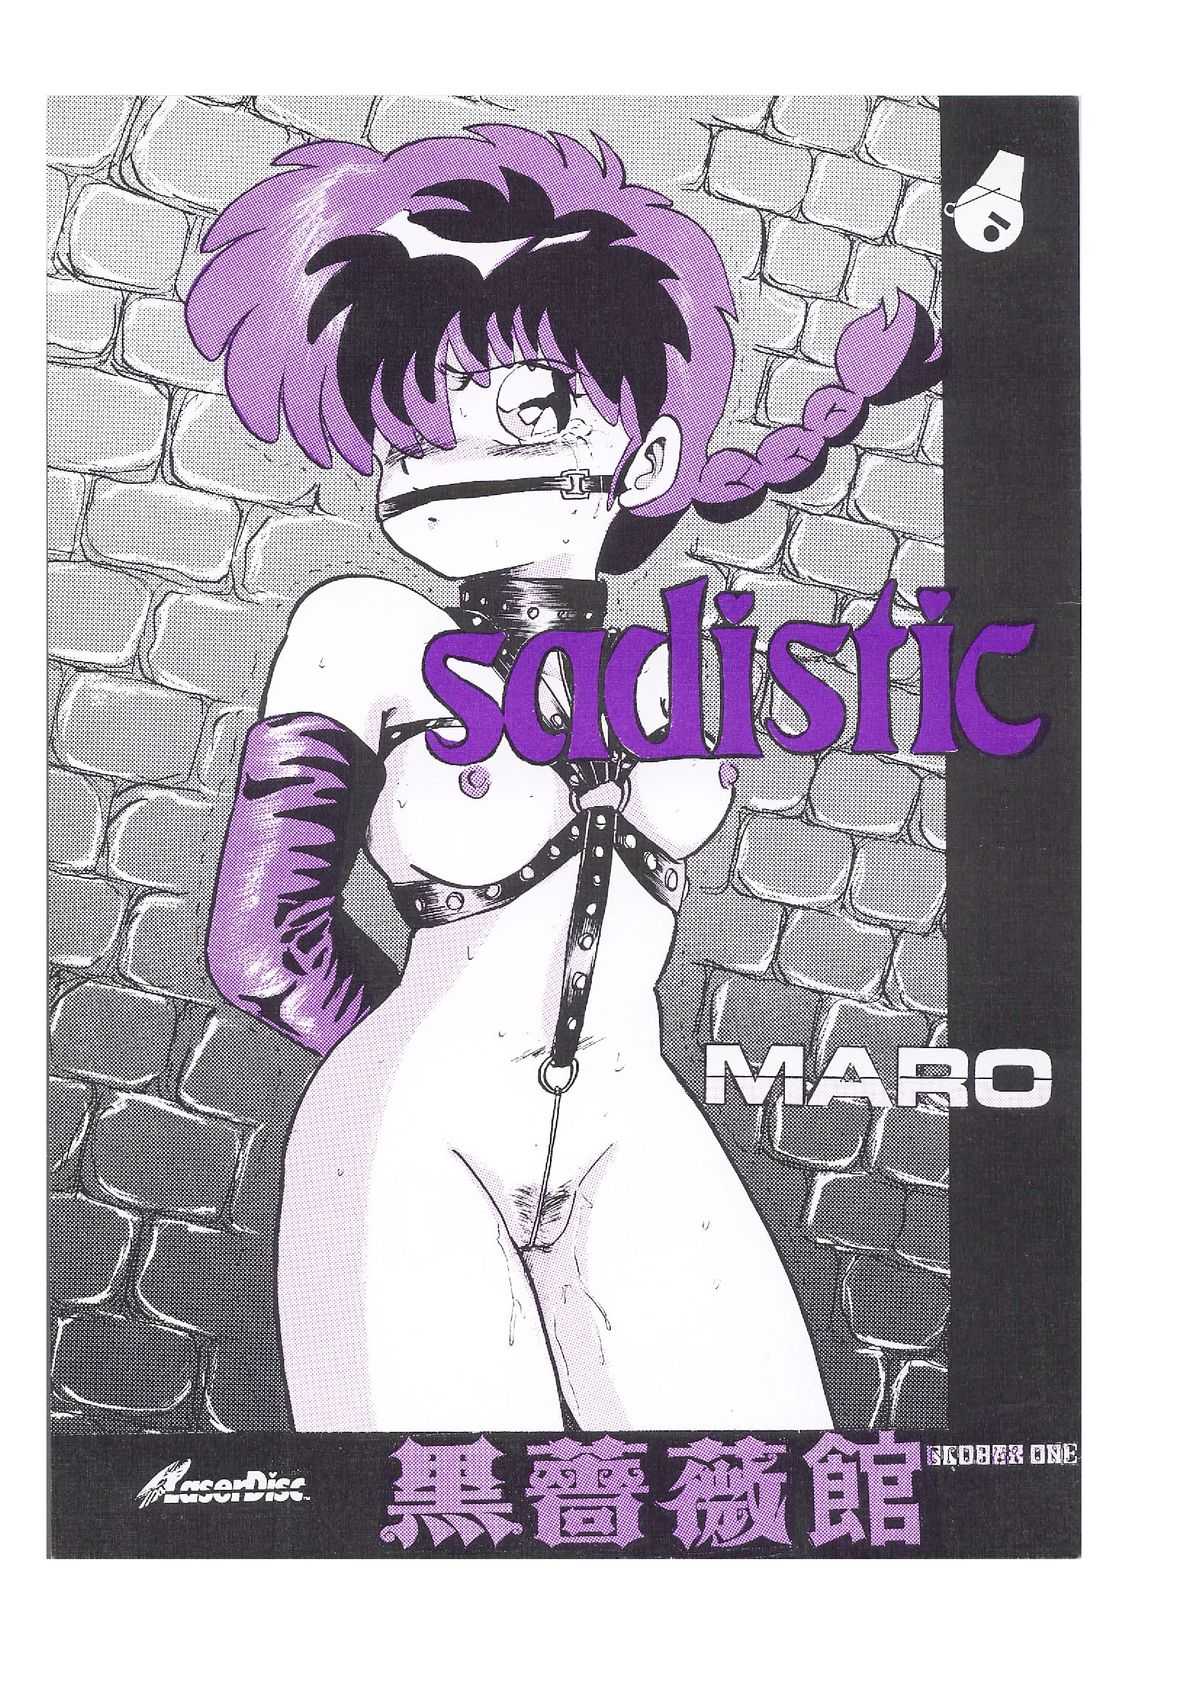 [Global One (Maro)] sadistic LaserDisc Kuro Bara-kan (Ranma 1/2) [グローバルワン (Maro)] sadistic LaserDisc 黒薔薇館 (らんま 1/2 )